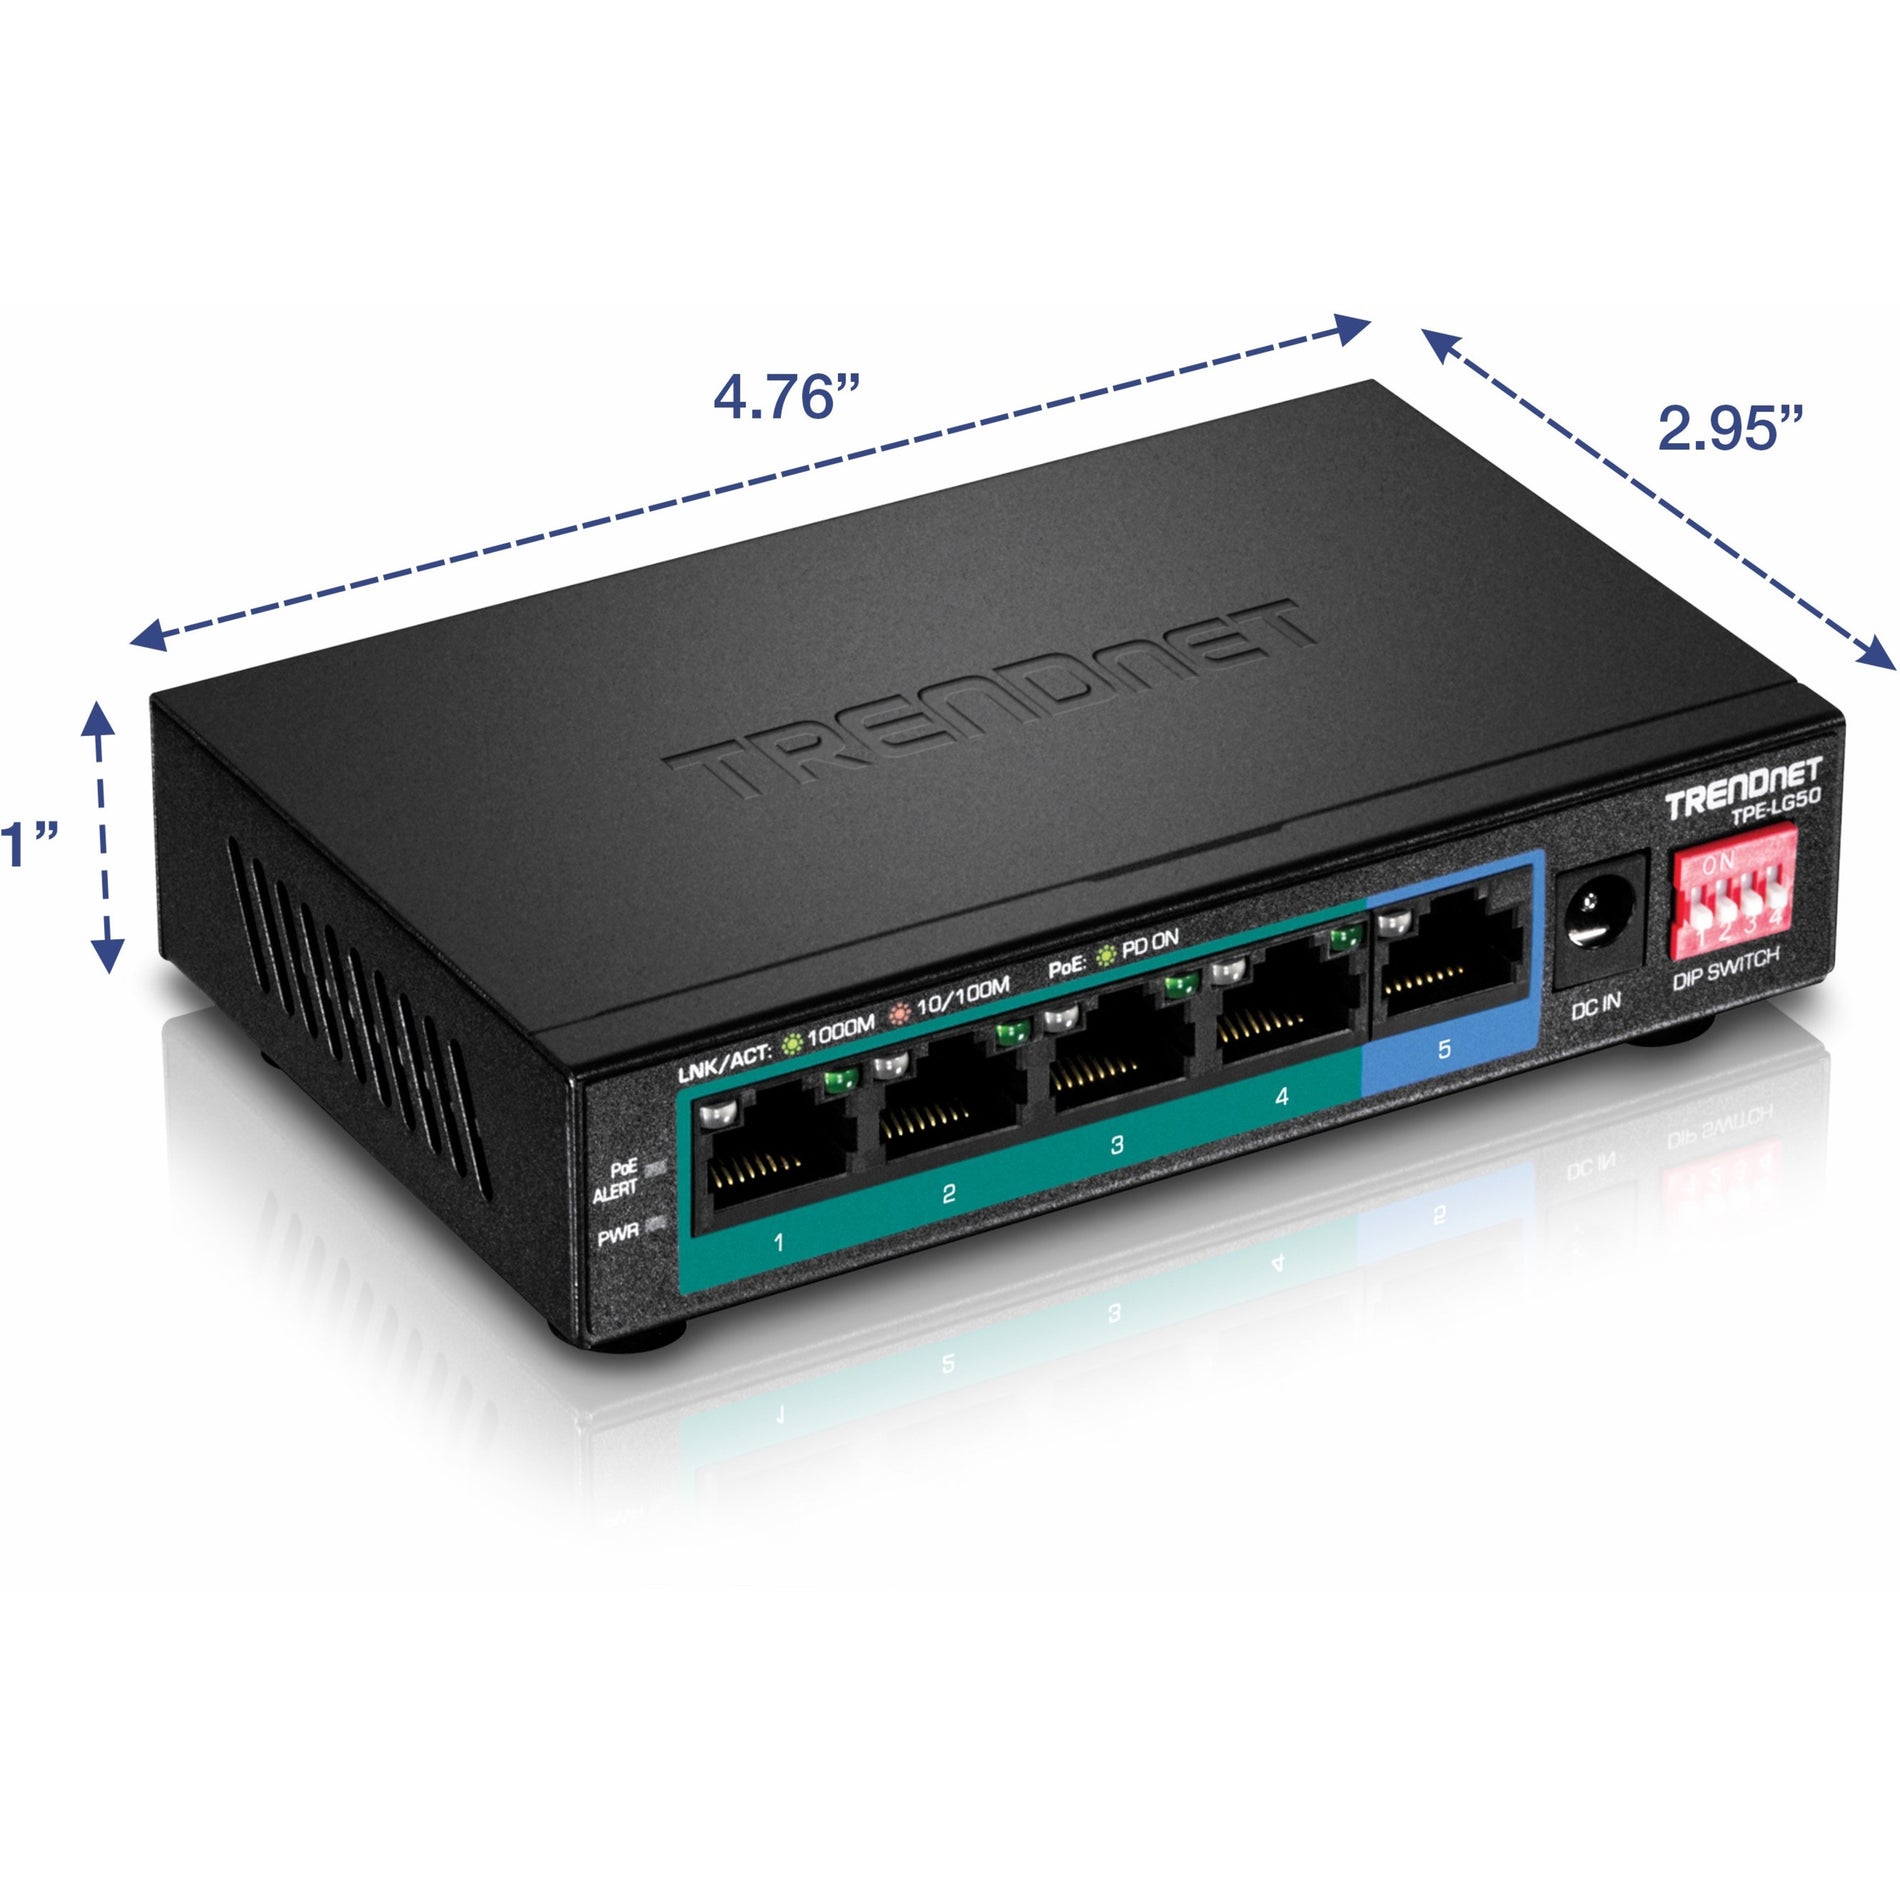 TRENDnet TPE-LG50 5-Port Gigabit Long Range PoE+ Switch Extends PoE+ 200m (656 ft) Lifetime Protection TRENDネットTPE-LG50 5ポートギガビット長距離PoE+スイッチ、PoE+を200m（656フィート）延長、ライフタイム保護